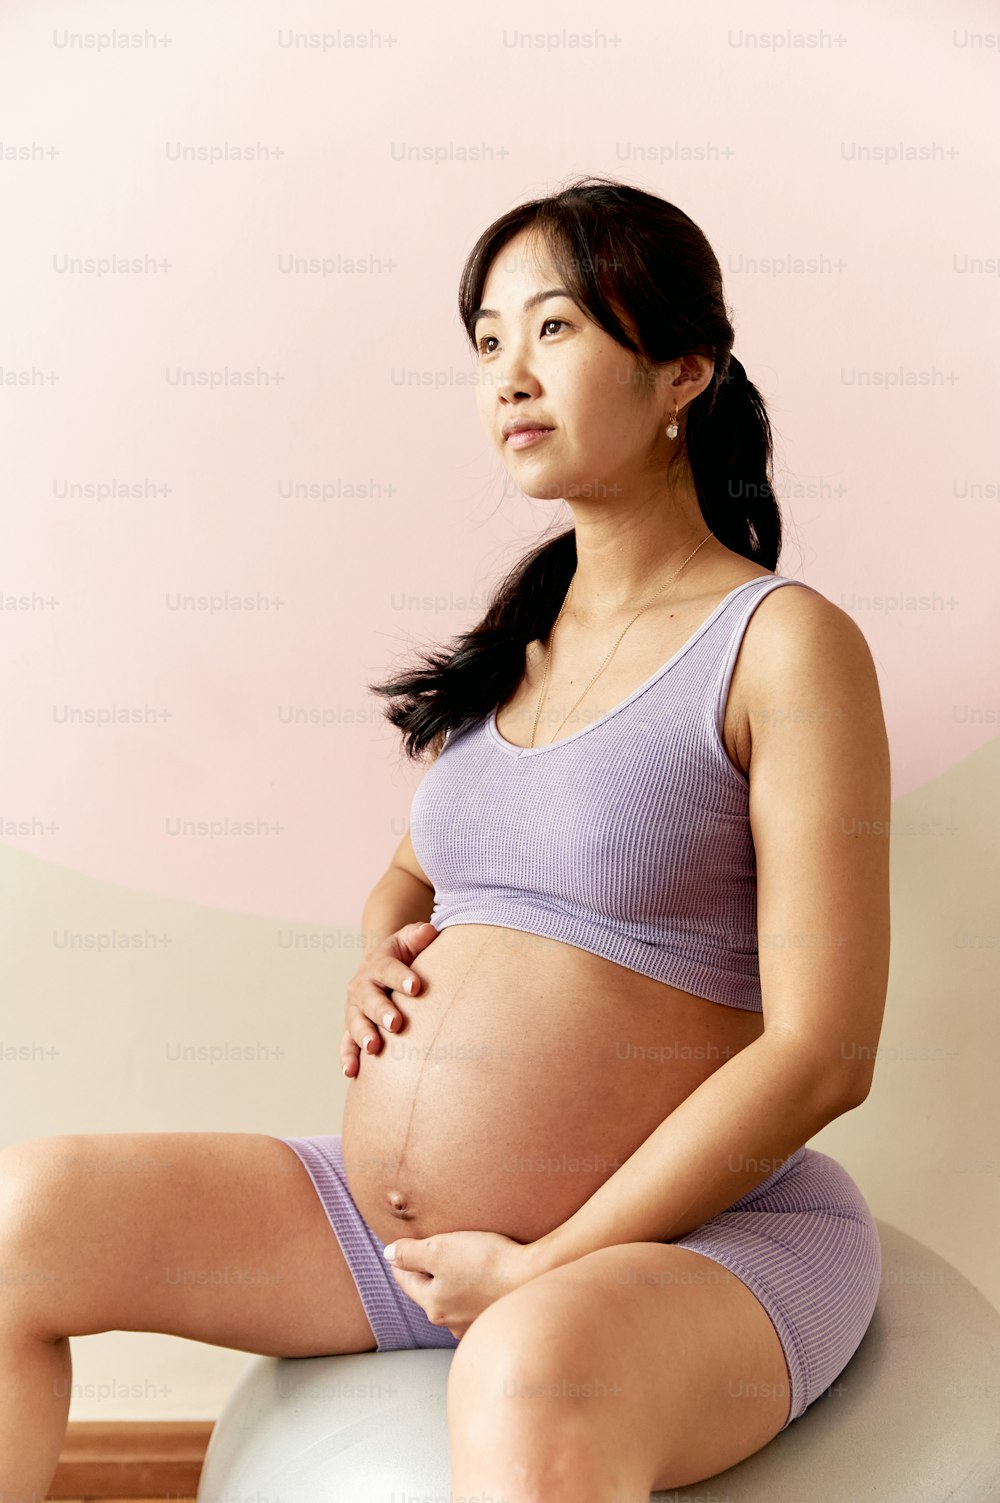 Una mujer embarazada sentada encima de una pelota